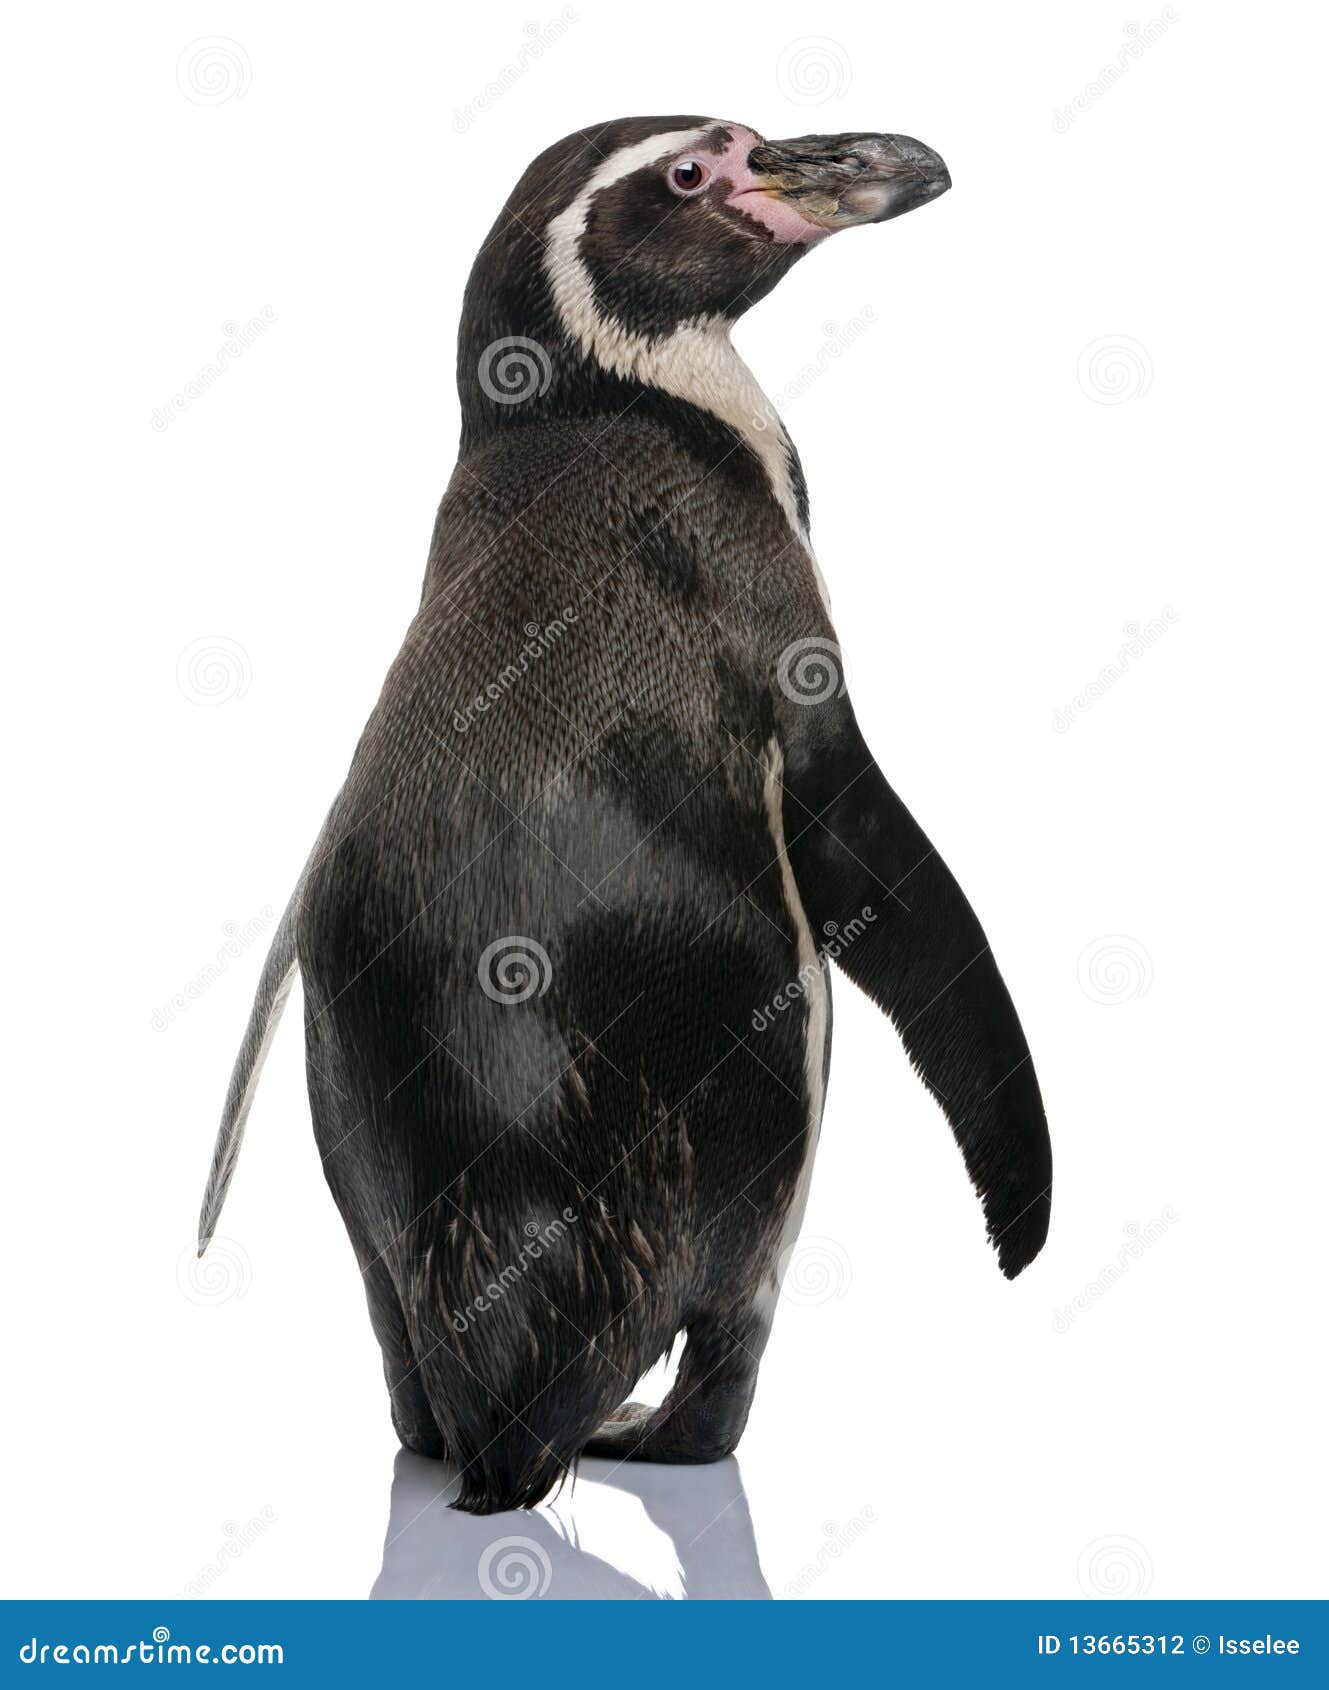 rear view of humboldt penguin, standing